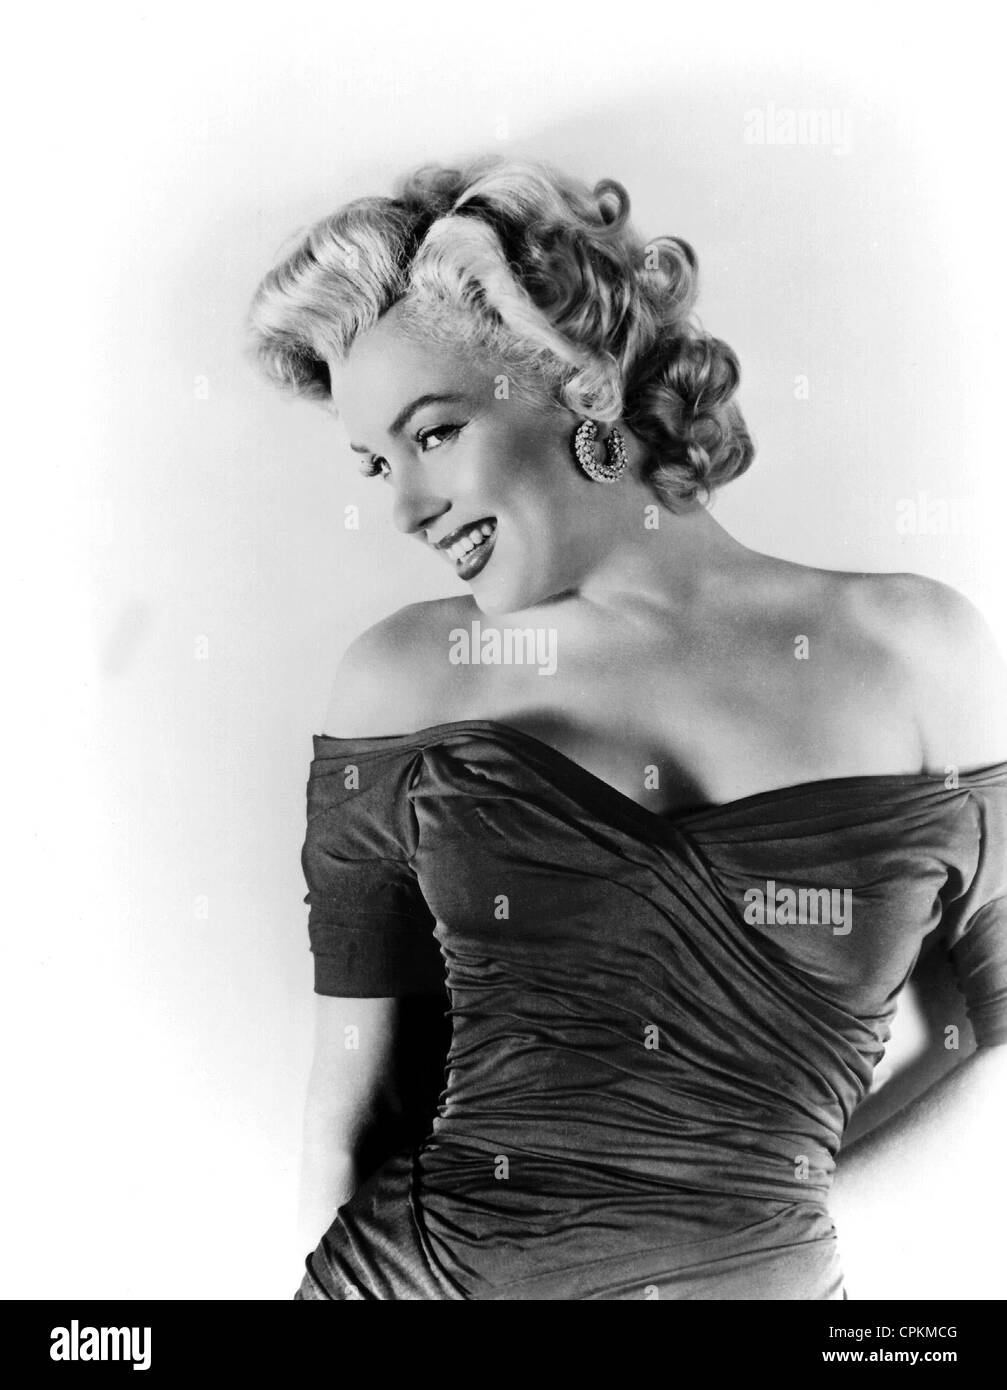 Un portrait couleur du film star Marilyn Monroe, photographié en 1957. Elle sourit à la caméra dans cette moitié du corps, portrait. Banque D'Images